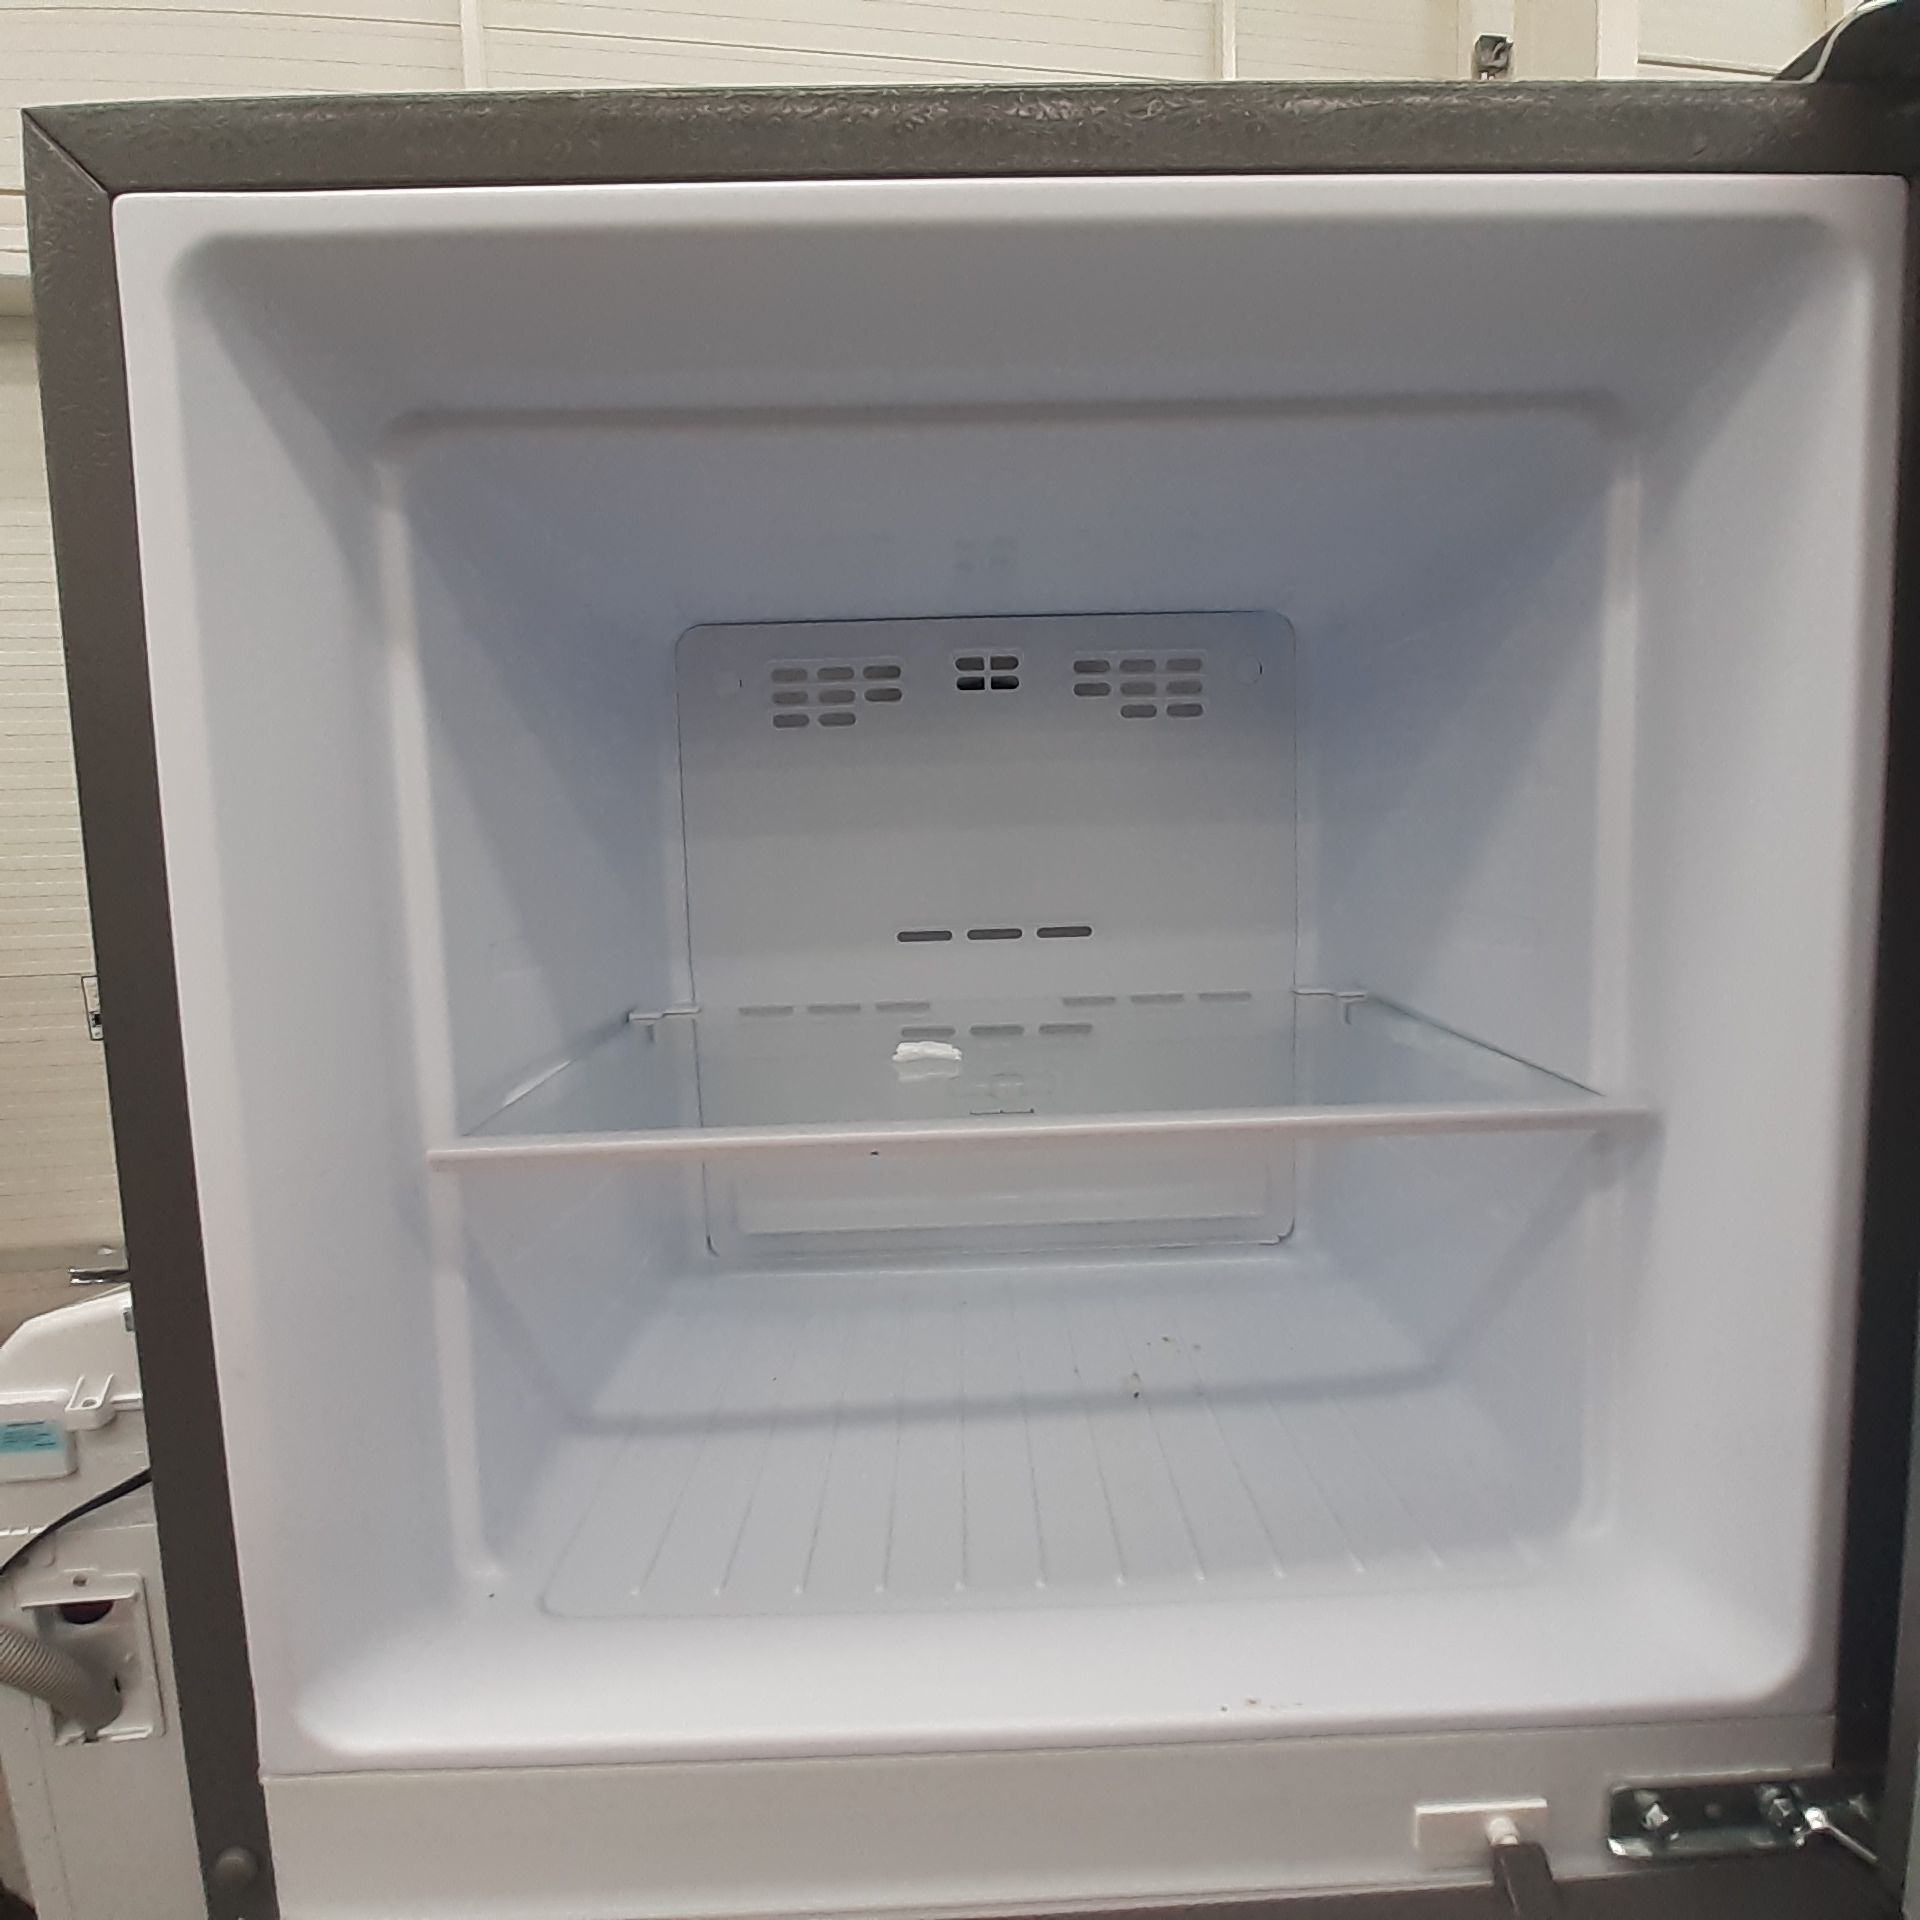 Lote De 2 Refrigeradores: 1 Refrigerador Marca Mabe, 1 Refrigerador Marca Winia, Distintos Modelos - Image 14 of 23